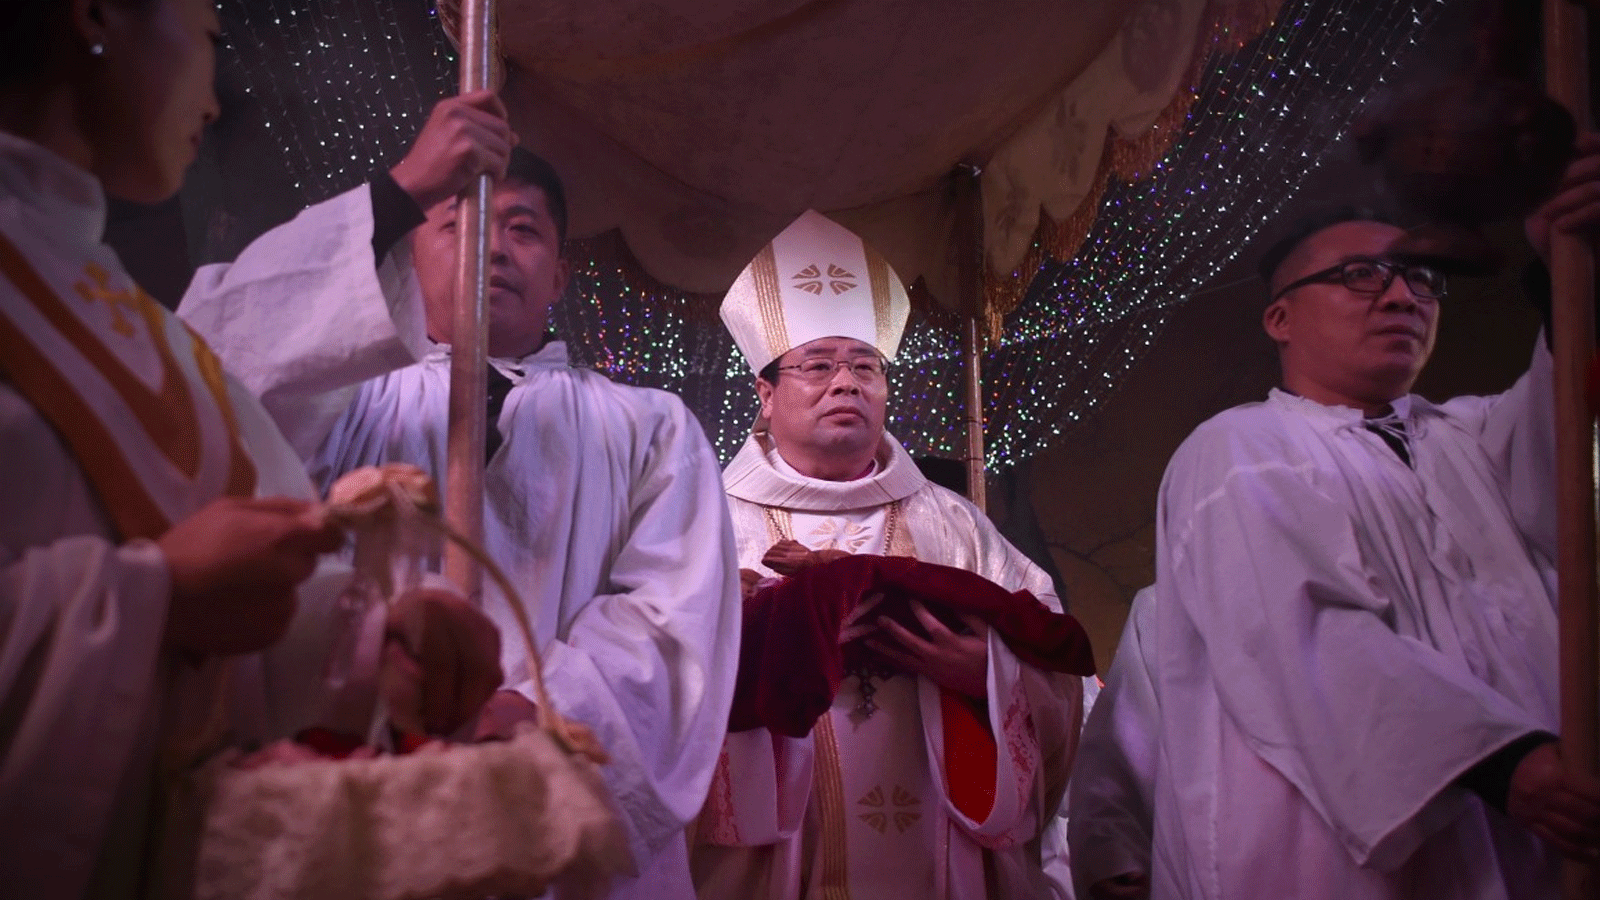 رئيس الأساقفة جوزيف لي شان (في الوسط) يحضر قداس عشية عيد الميلاد في كنيسة كاثوليكية في بكين في 24 ديسمبر كانون الأول\2015.